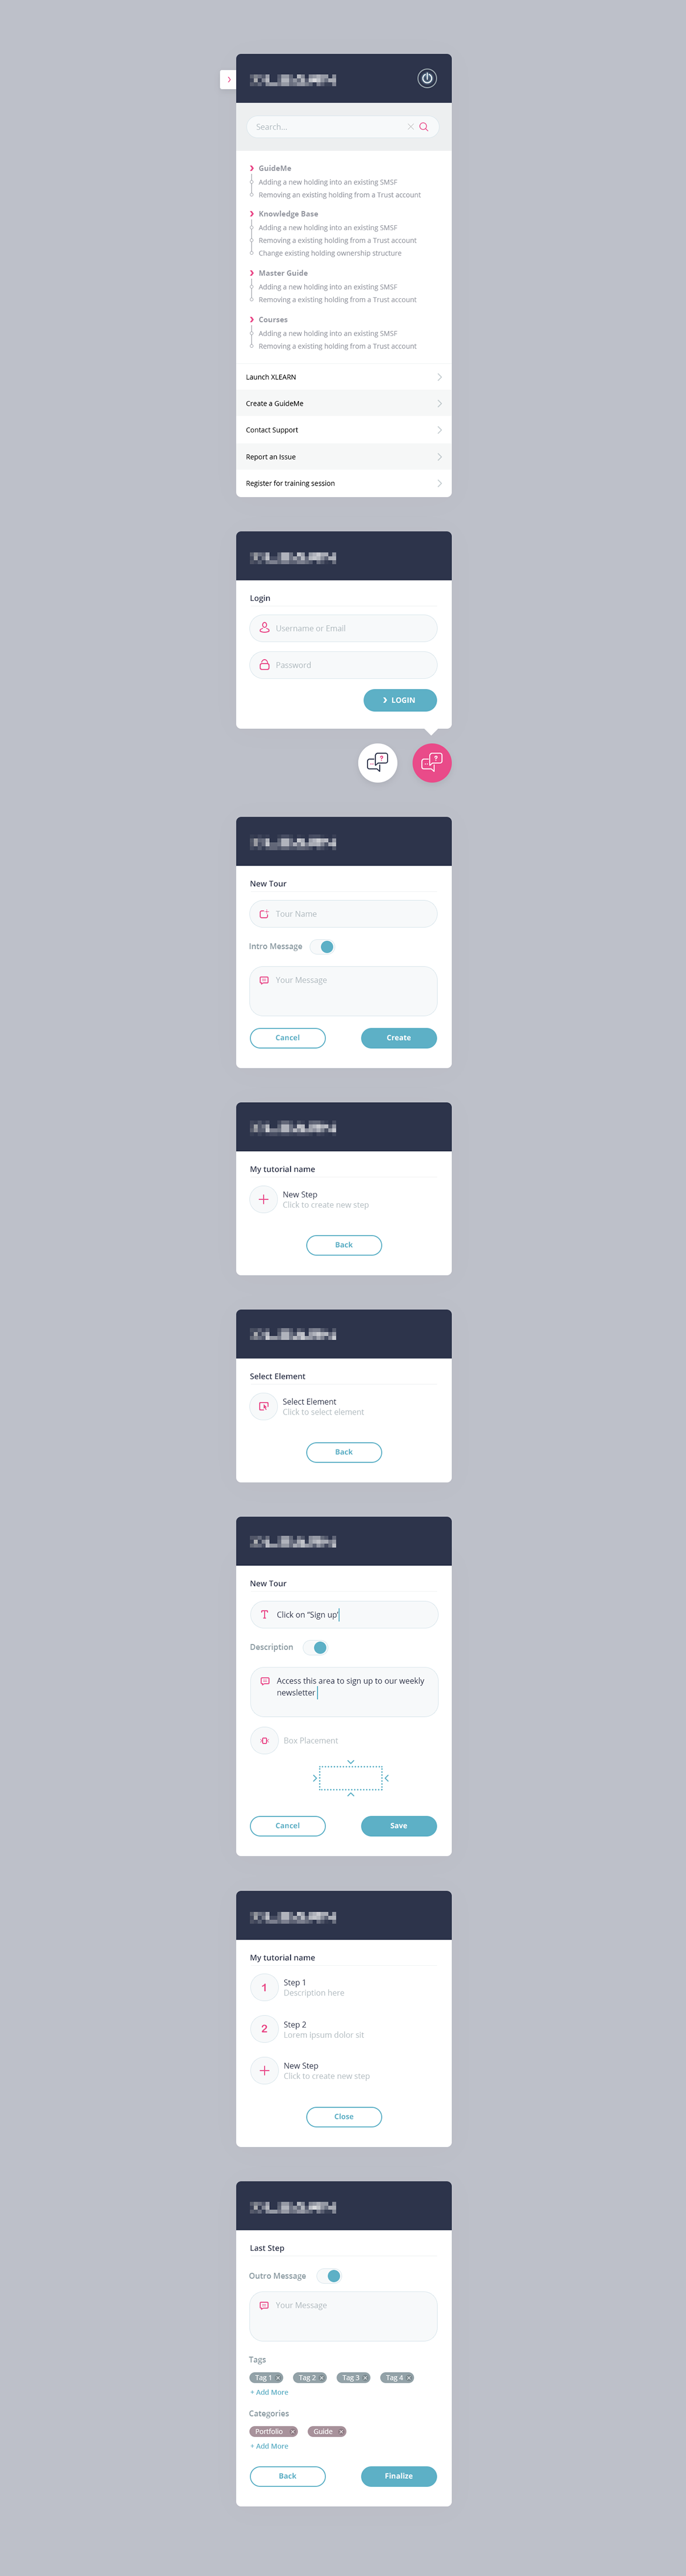 chat flow helpdesk steps UX web web app widget icons live